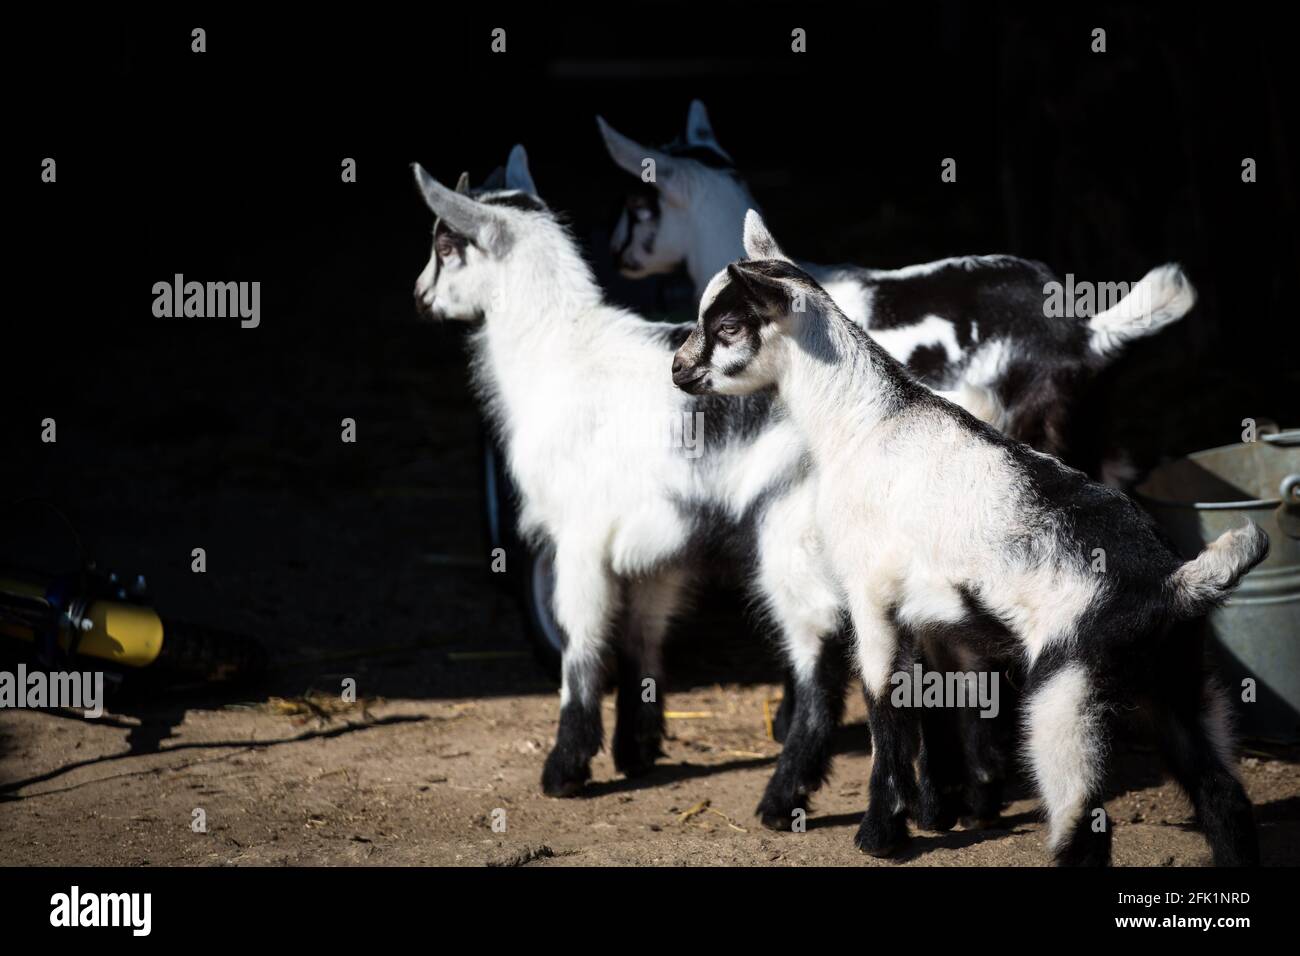 Les chevreaux de la race 'Pfauenziege' (chèvre de paon), une espèce de chèvre autrichienne en voie de disparition Banque D'Images